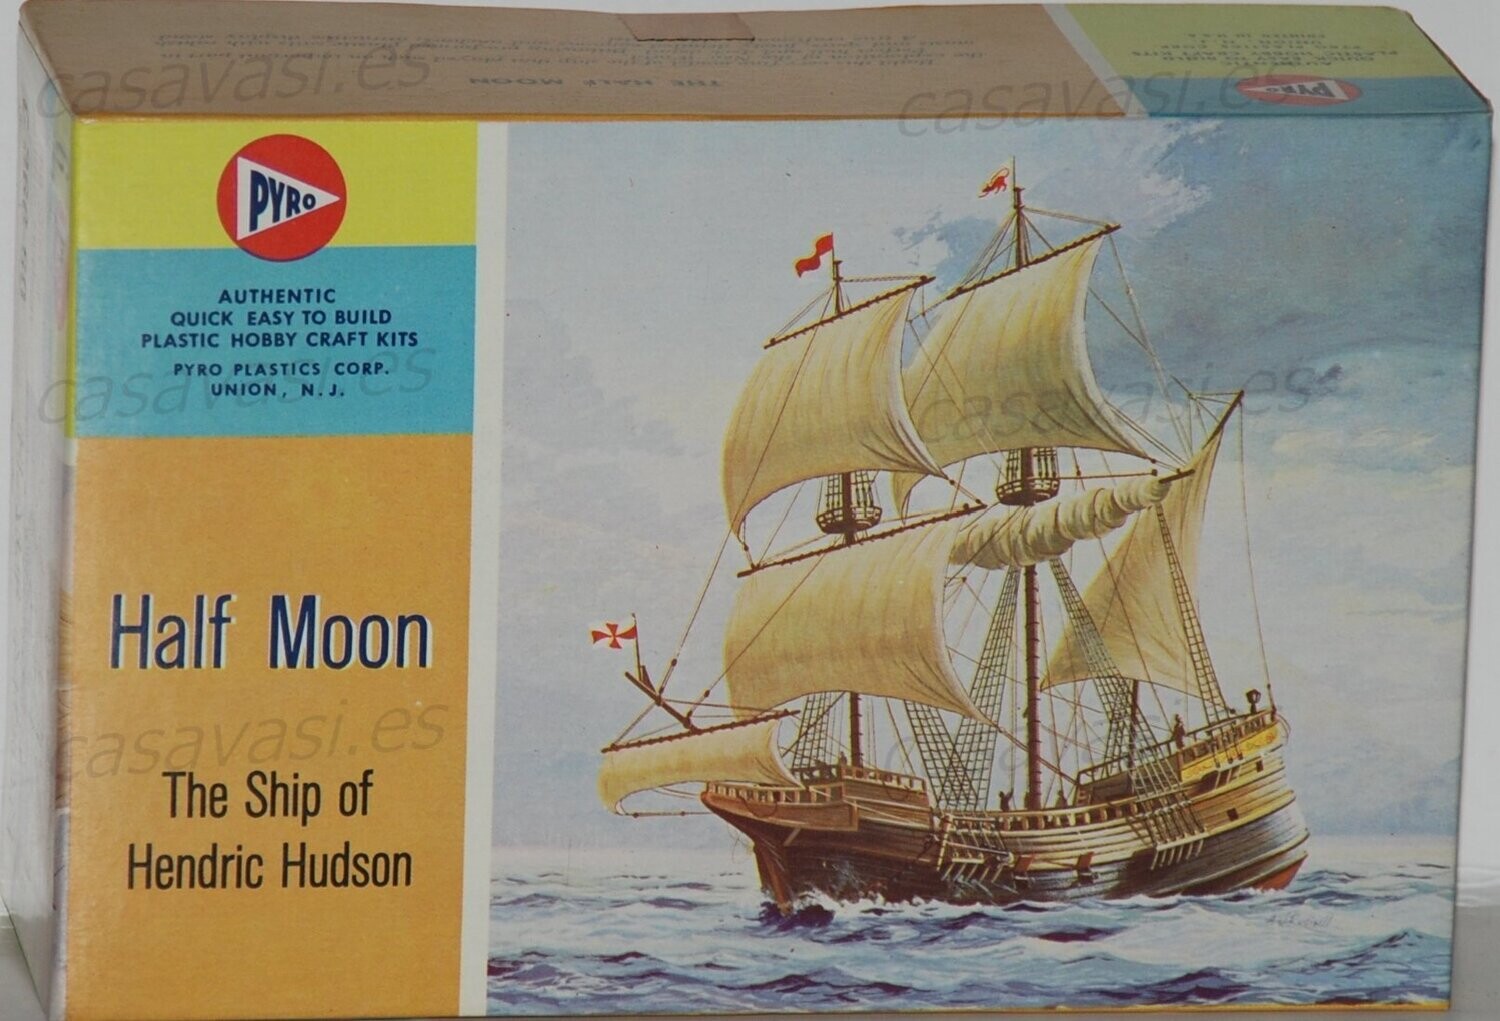 Pyro - c366-60 - Nº 6 - Half Moon - The Ship of Hendric Hudson
Box Size 18.5 x 12 cm.